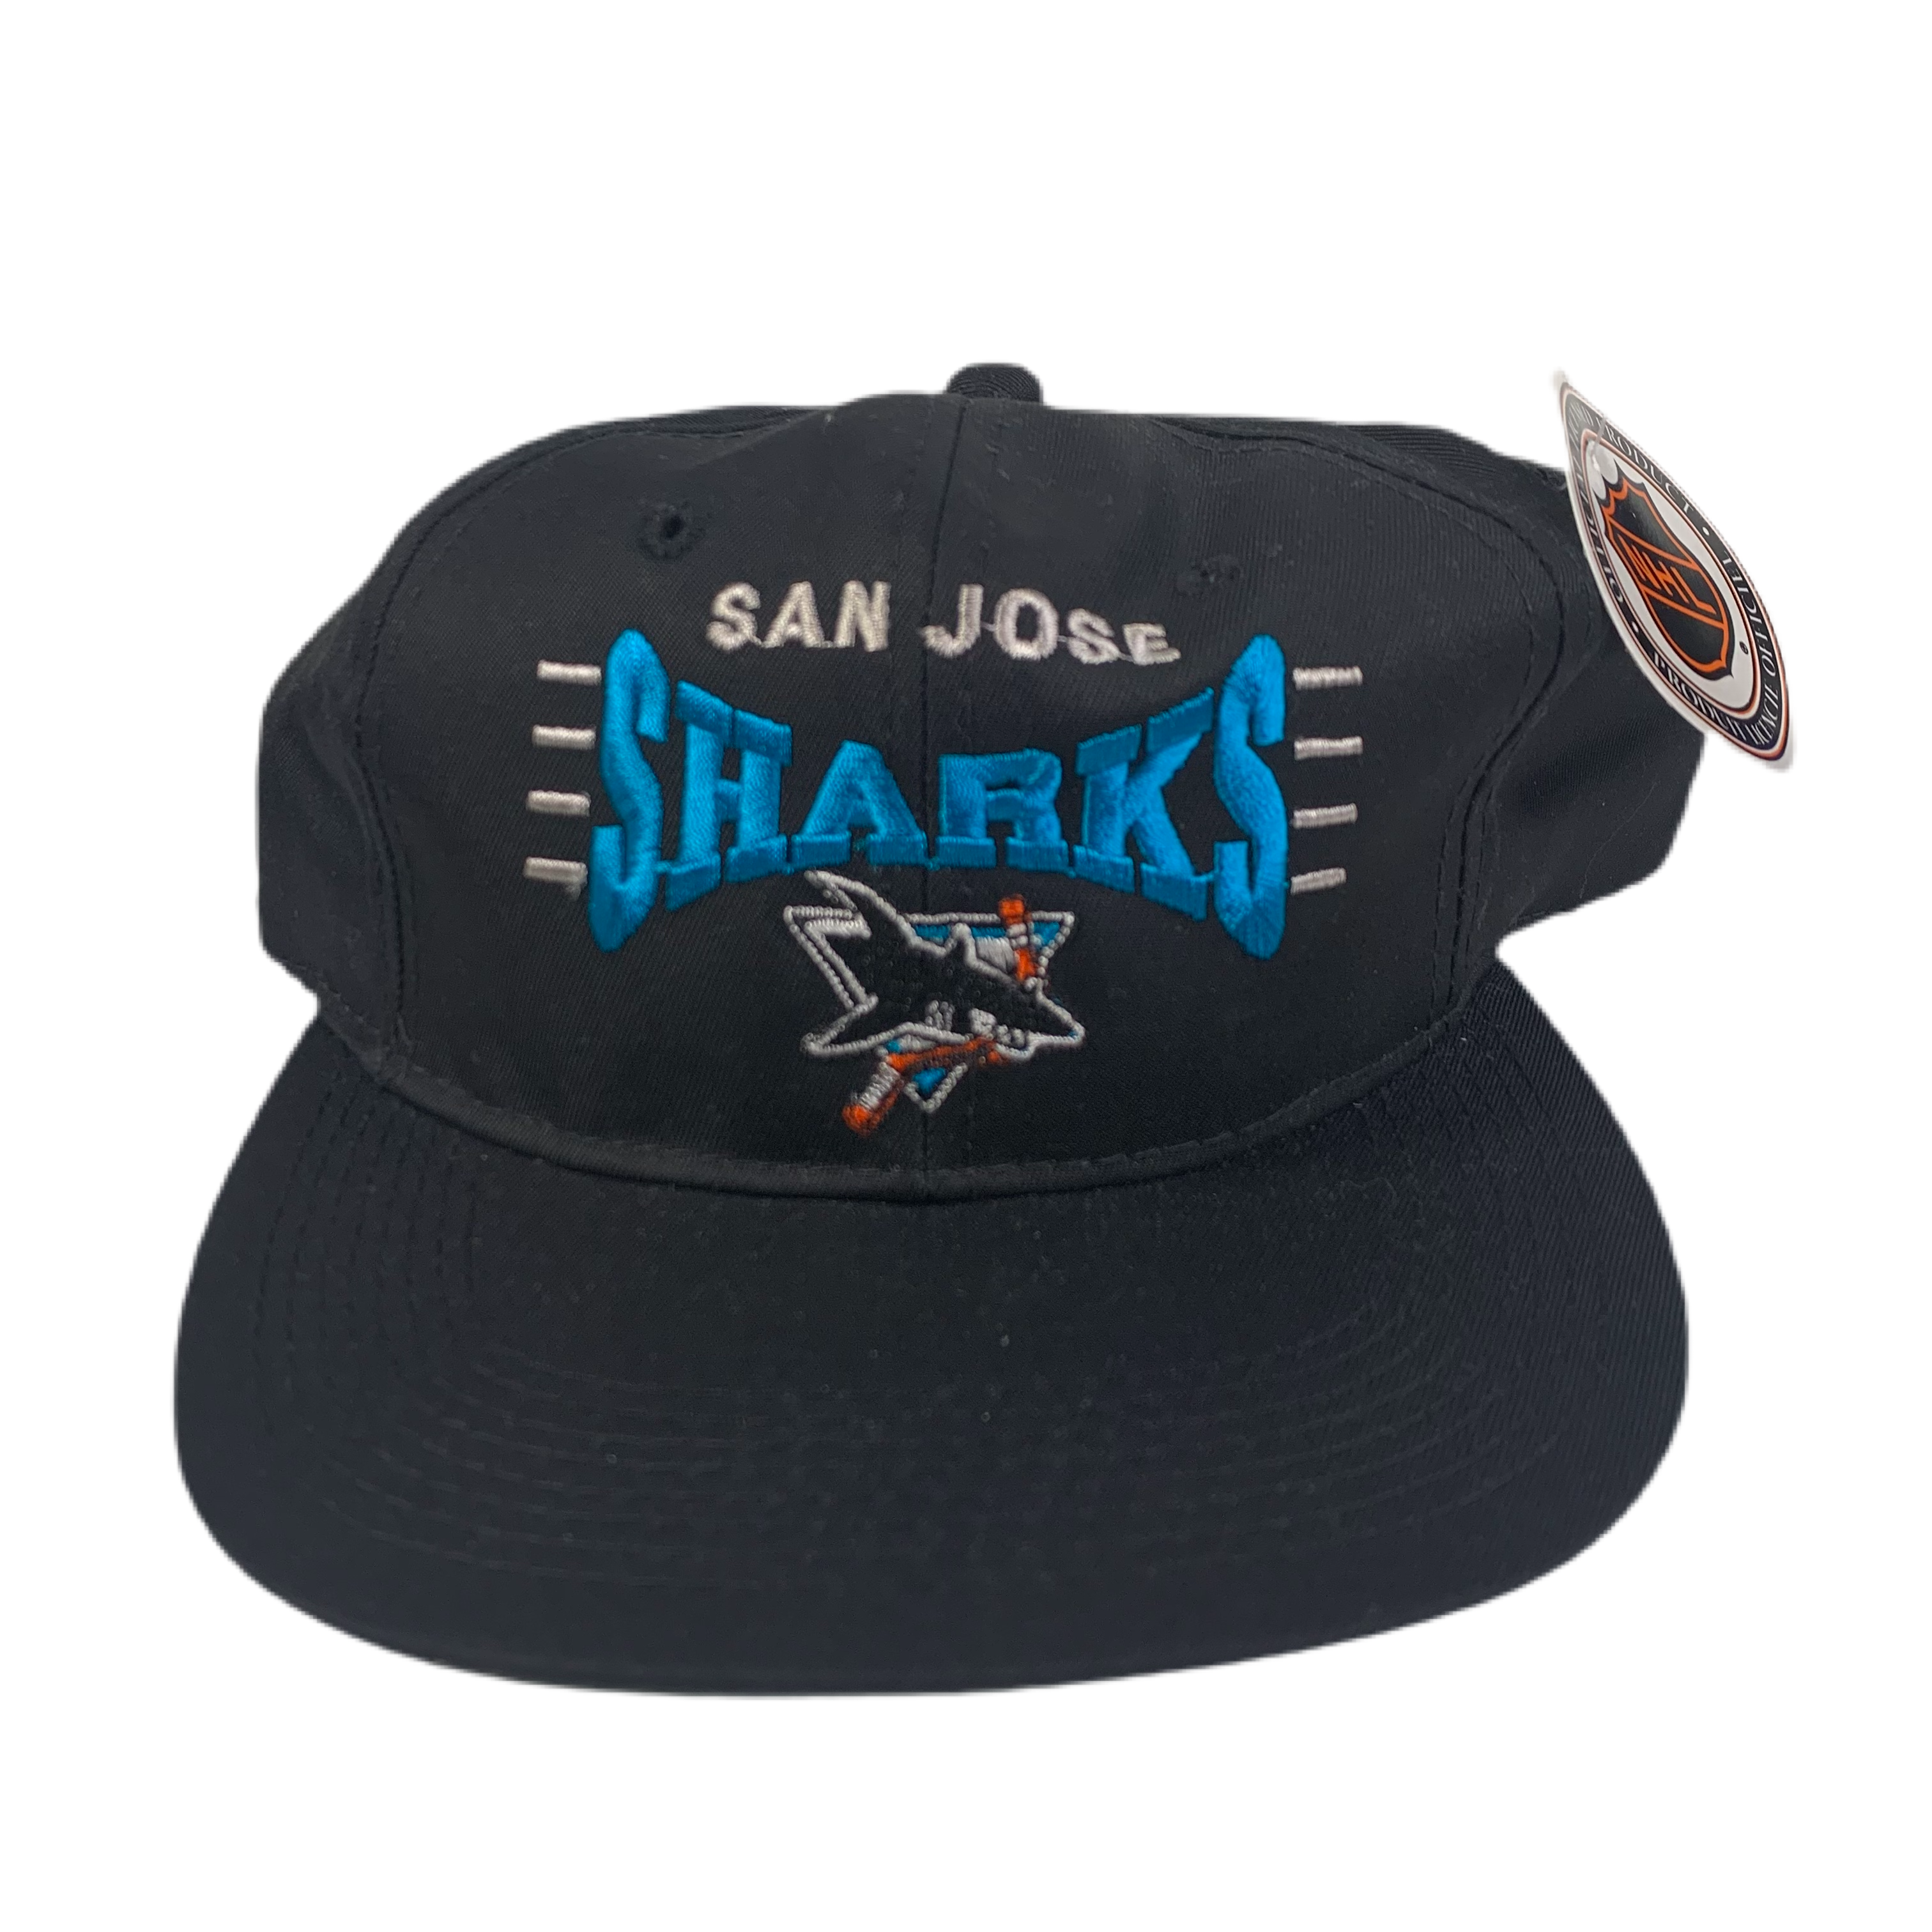 San Jose Sharks T-Shirts in San Jose Sharks Team Shop 